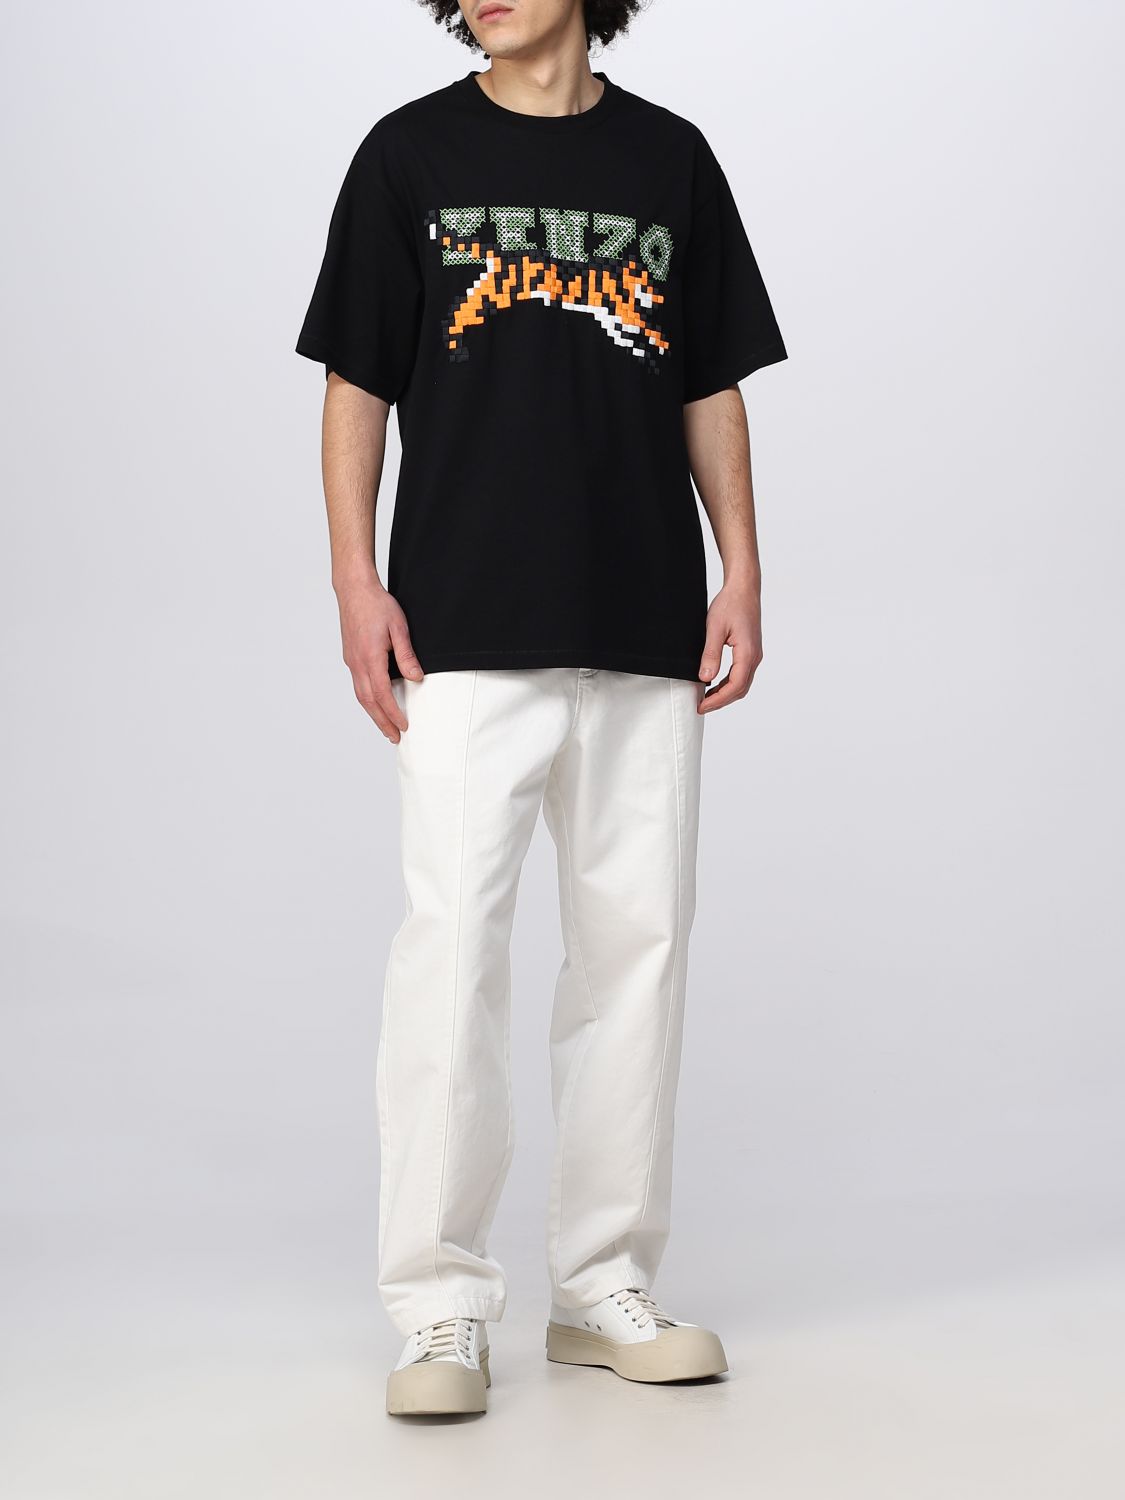 T-shirt Kenzo: T-shirt Tiger Pixel Kenzo in cotone nero 2